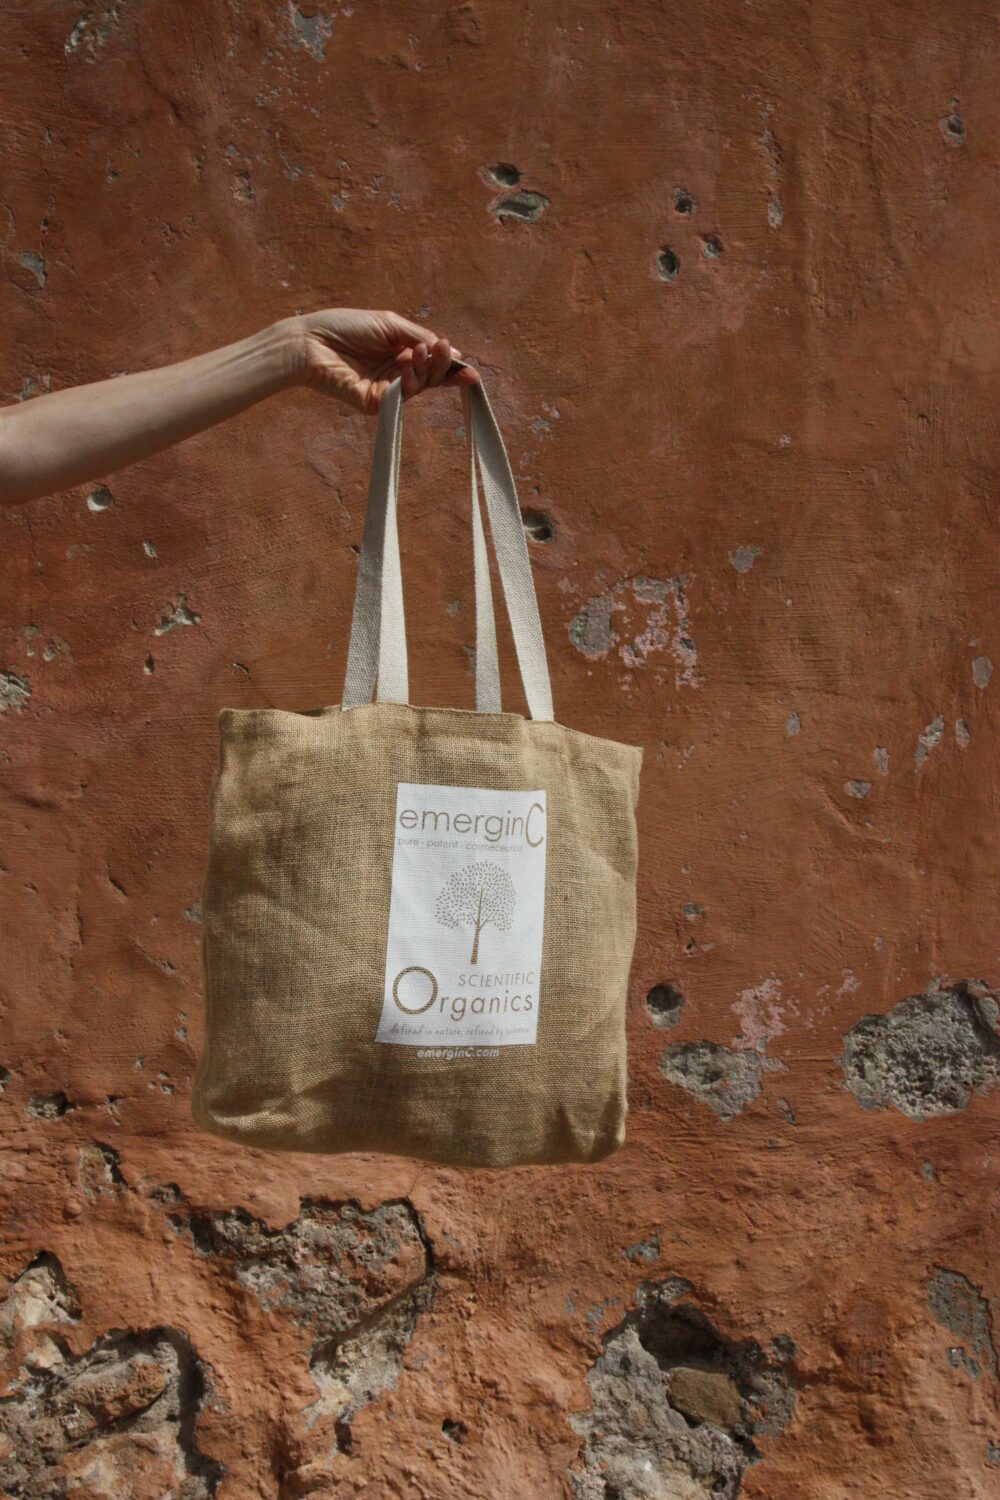 emerginC burlap bag from Scientific Organics line held against reddish-brown wall